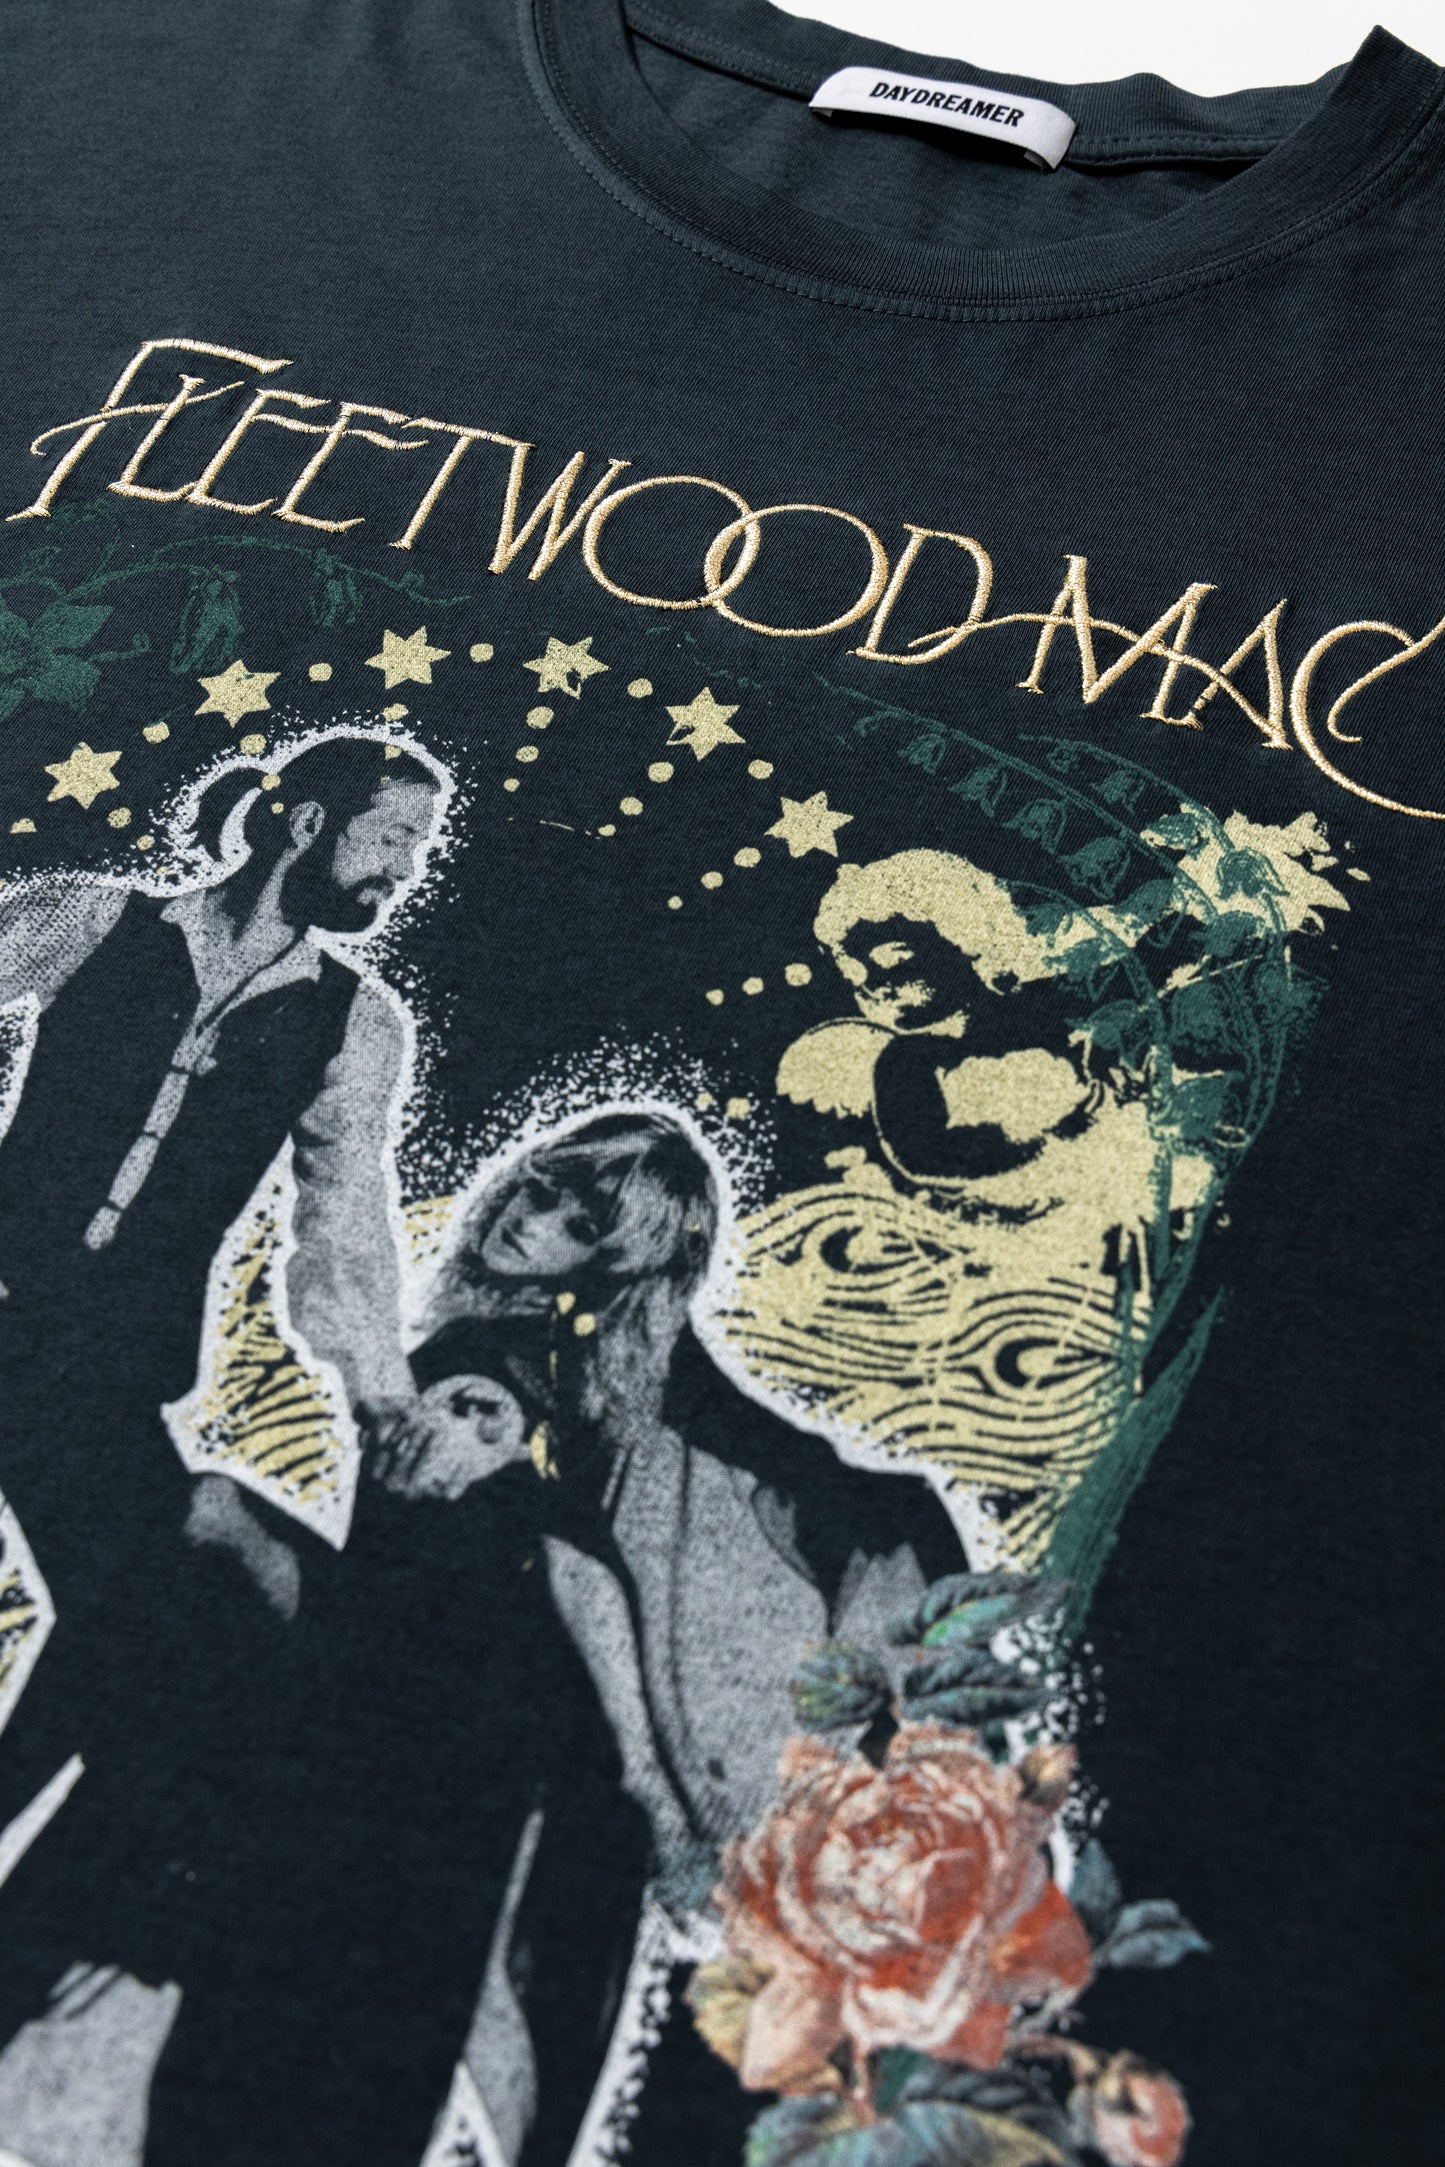 Fleetwood Mac Rumours OS Tee